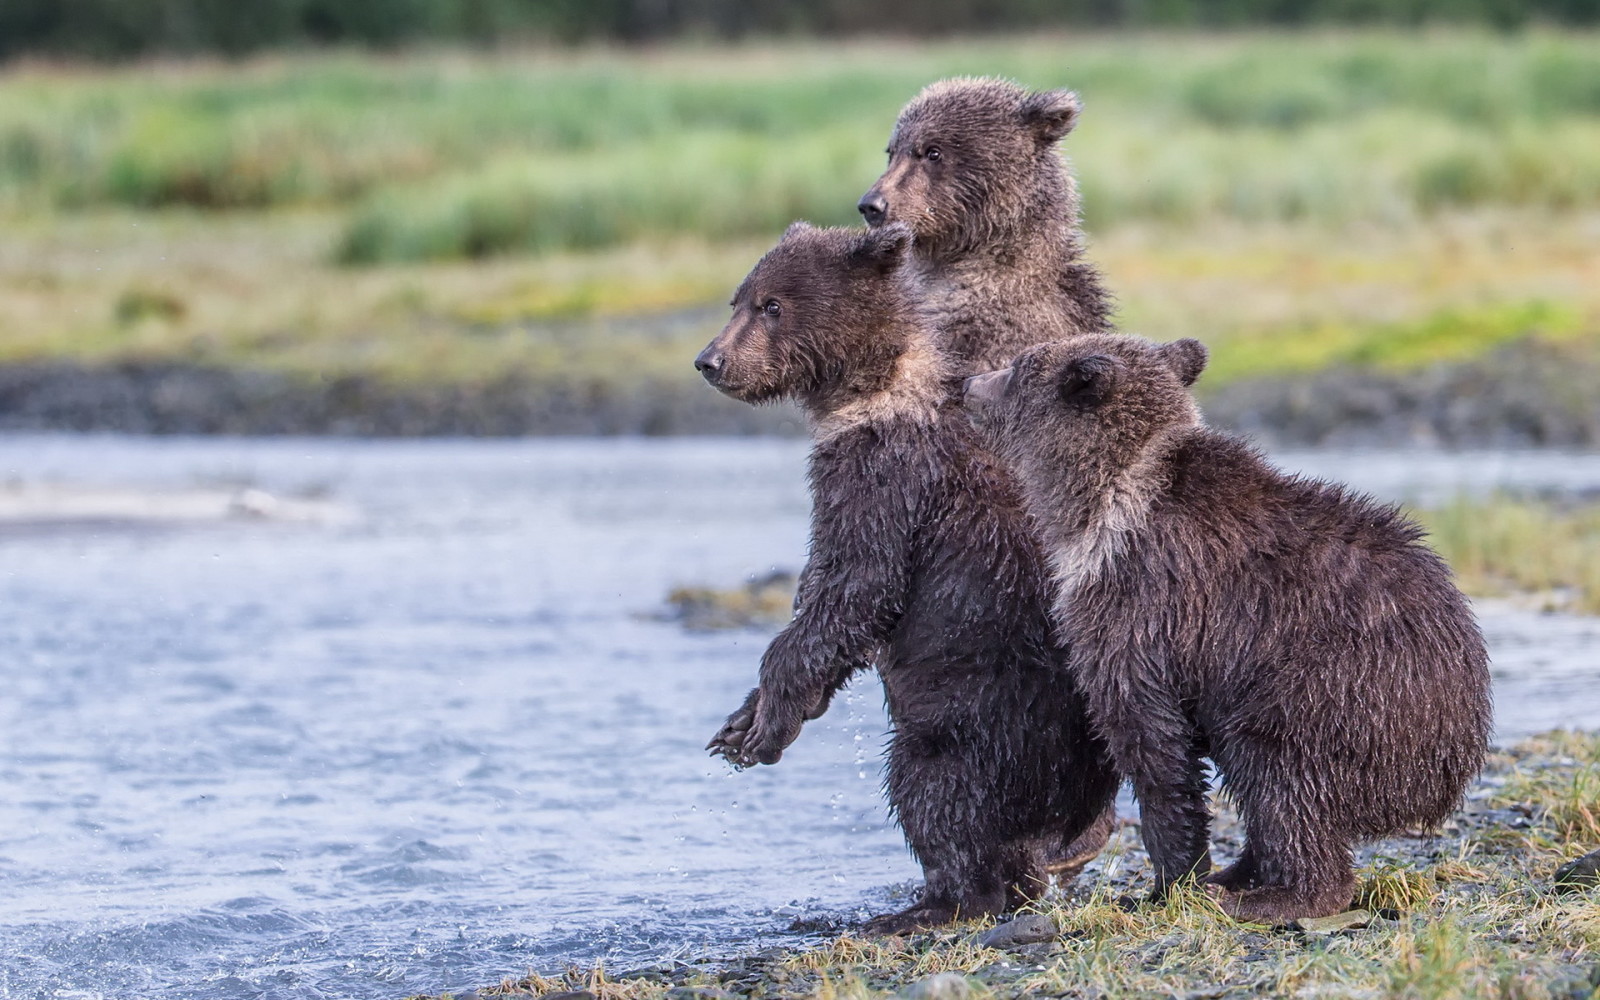 สำรอง, มลรัฐอะแลสกา, หมีสามตัว, อุทยานแห่งชาติ Katmai